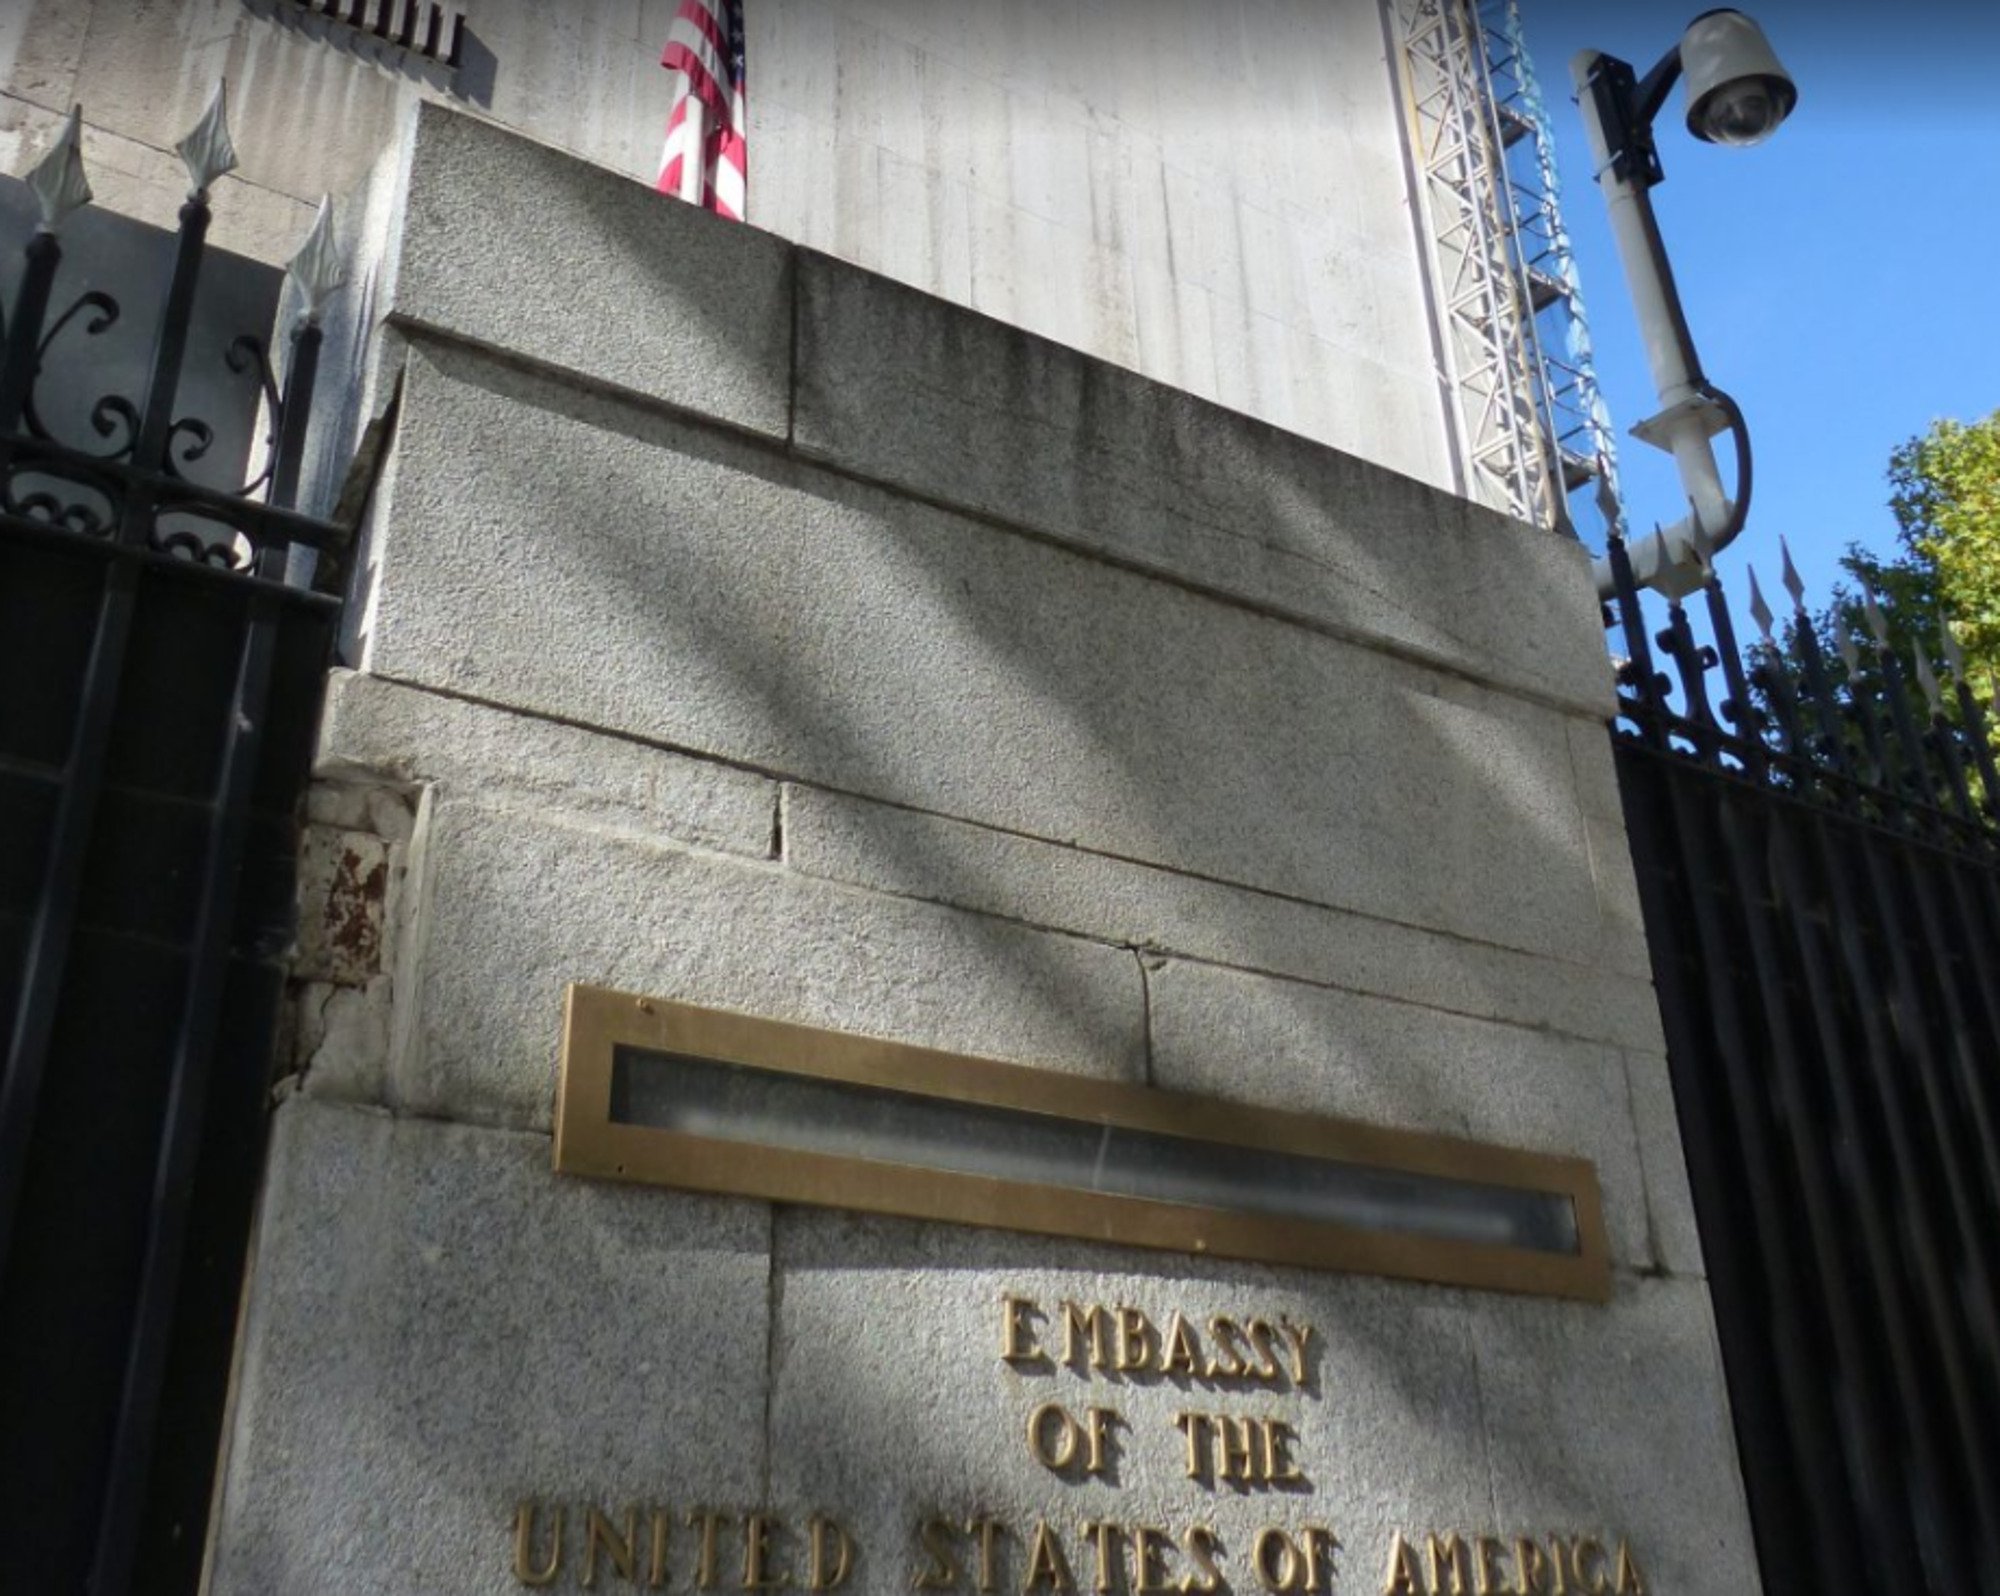 La embajada de los Estados Unidos recibe el sexto paquete con material explosivo